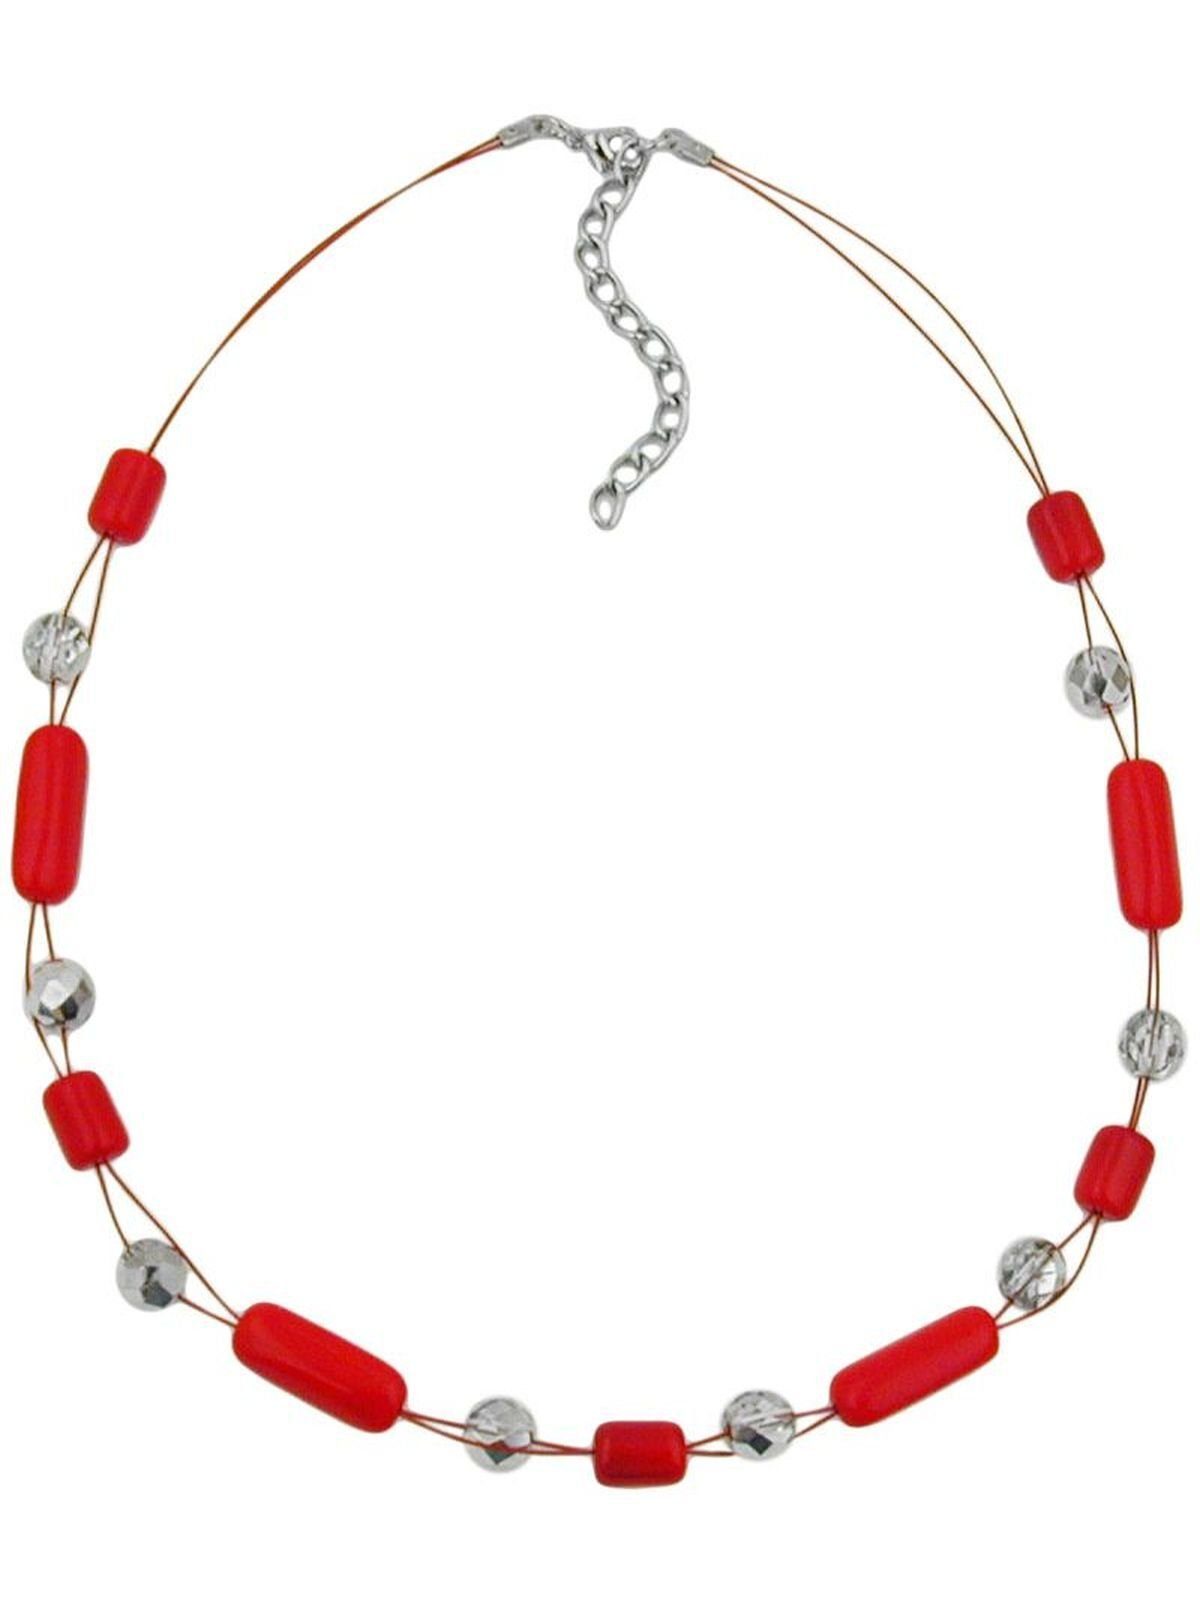 45cm rot Gallay Drahtkette silber-verspiegelt Perlenkette kristall mit Glasperlen Walze und